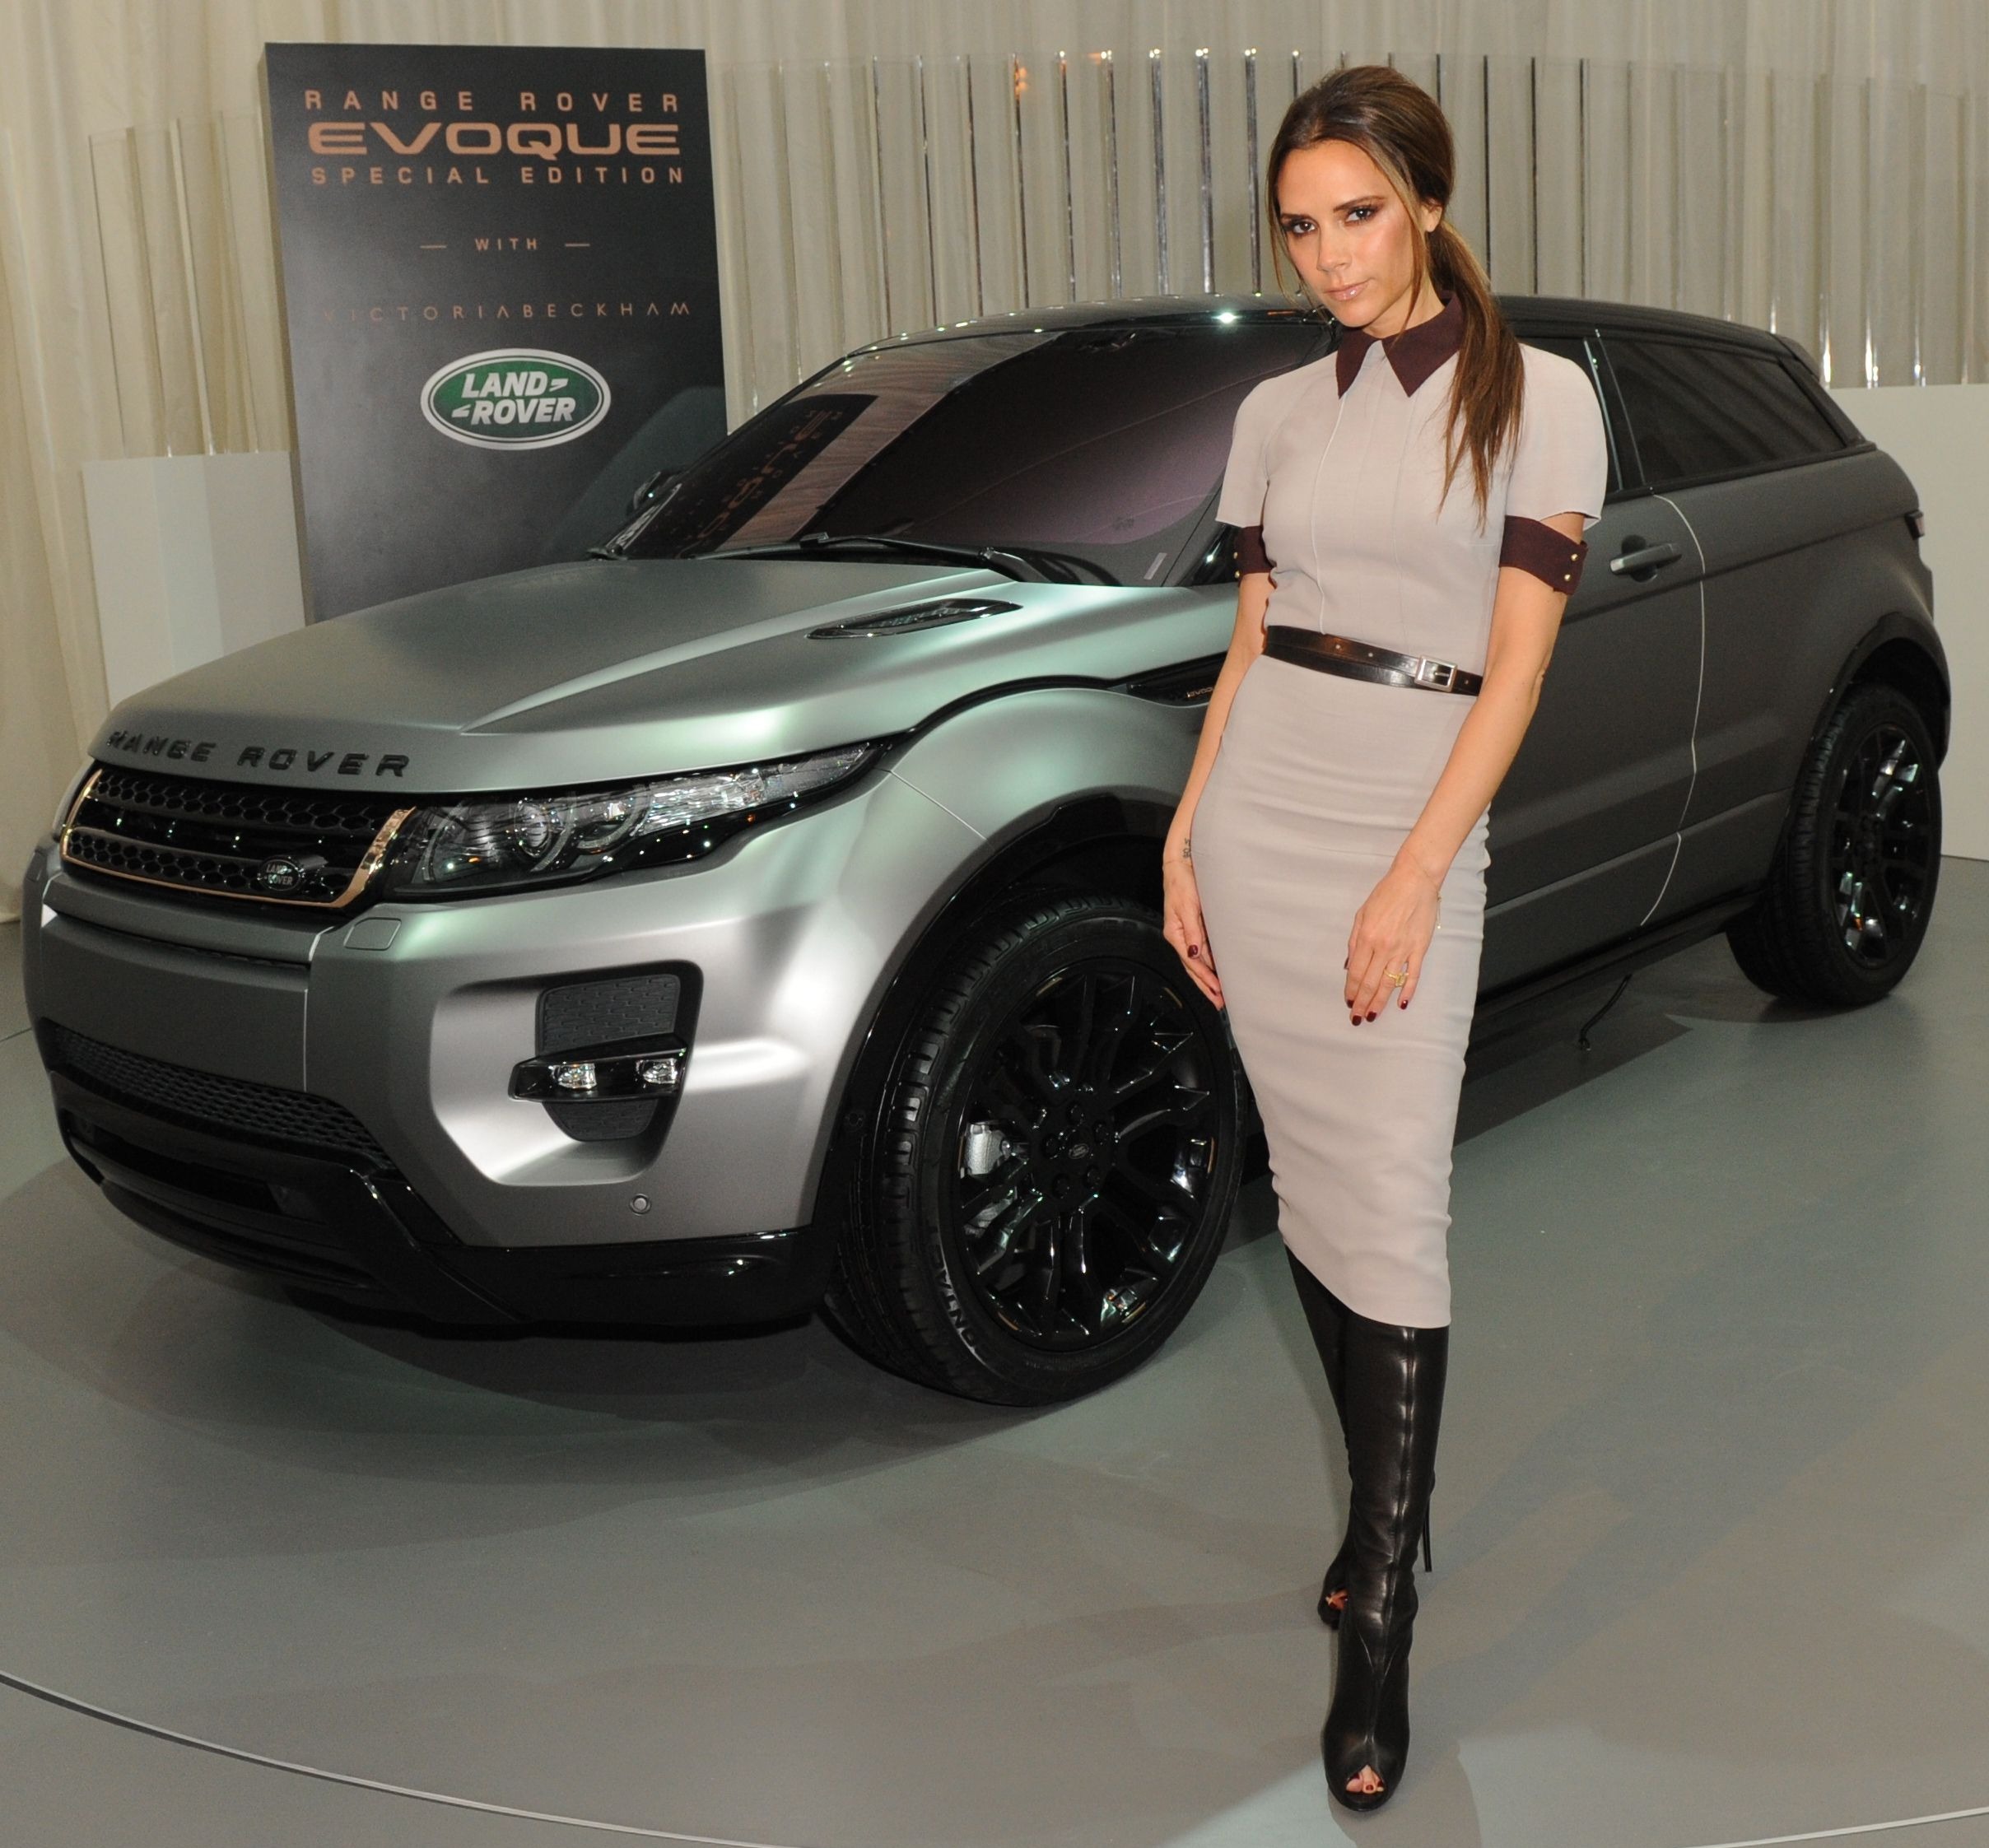 Range Rover gehörten letztes Jahr zu den am häufigsten gestohlenen Autos in Großbritannien